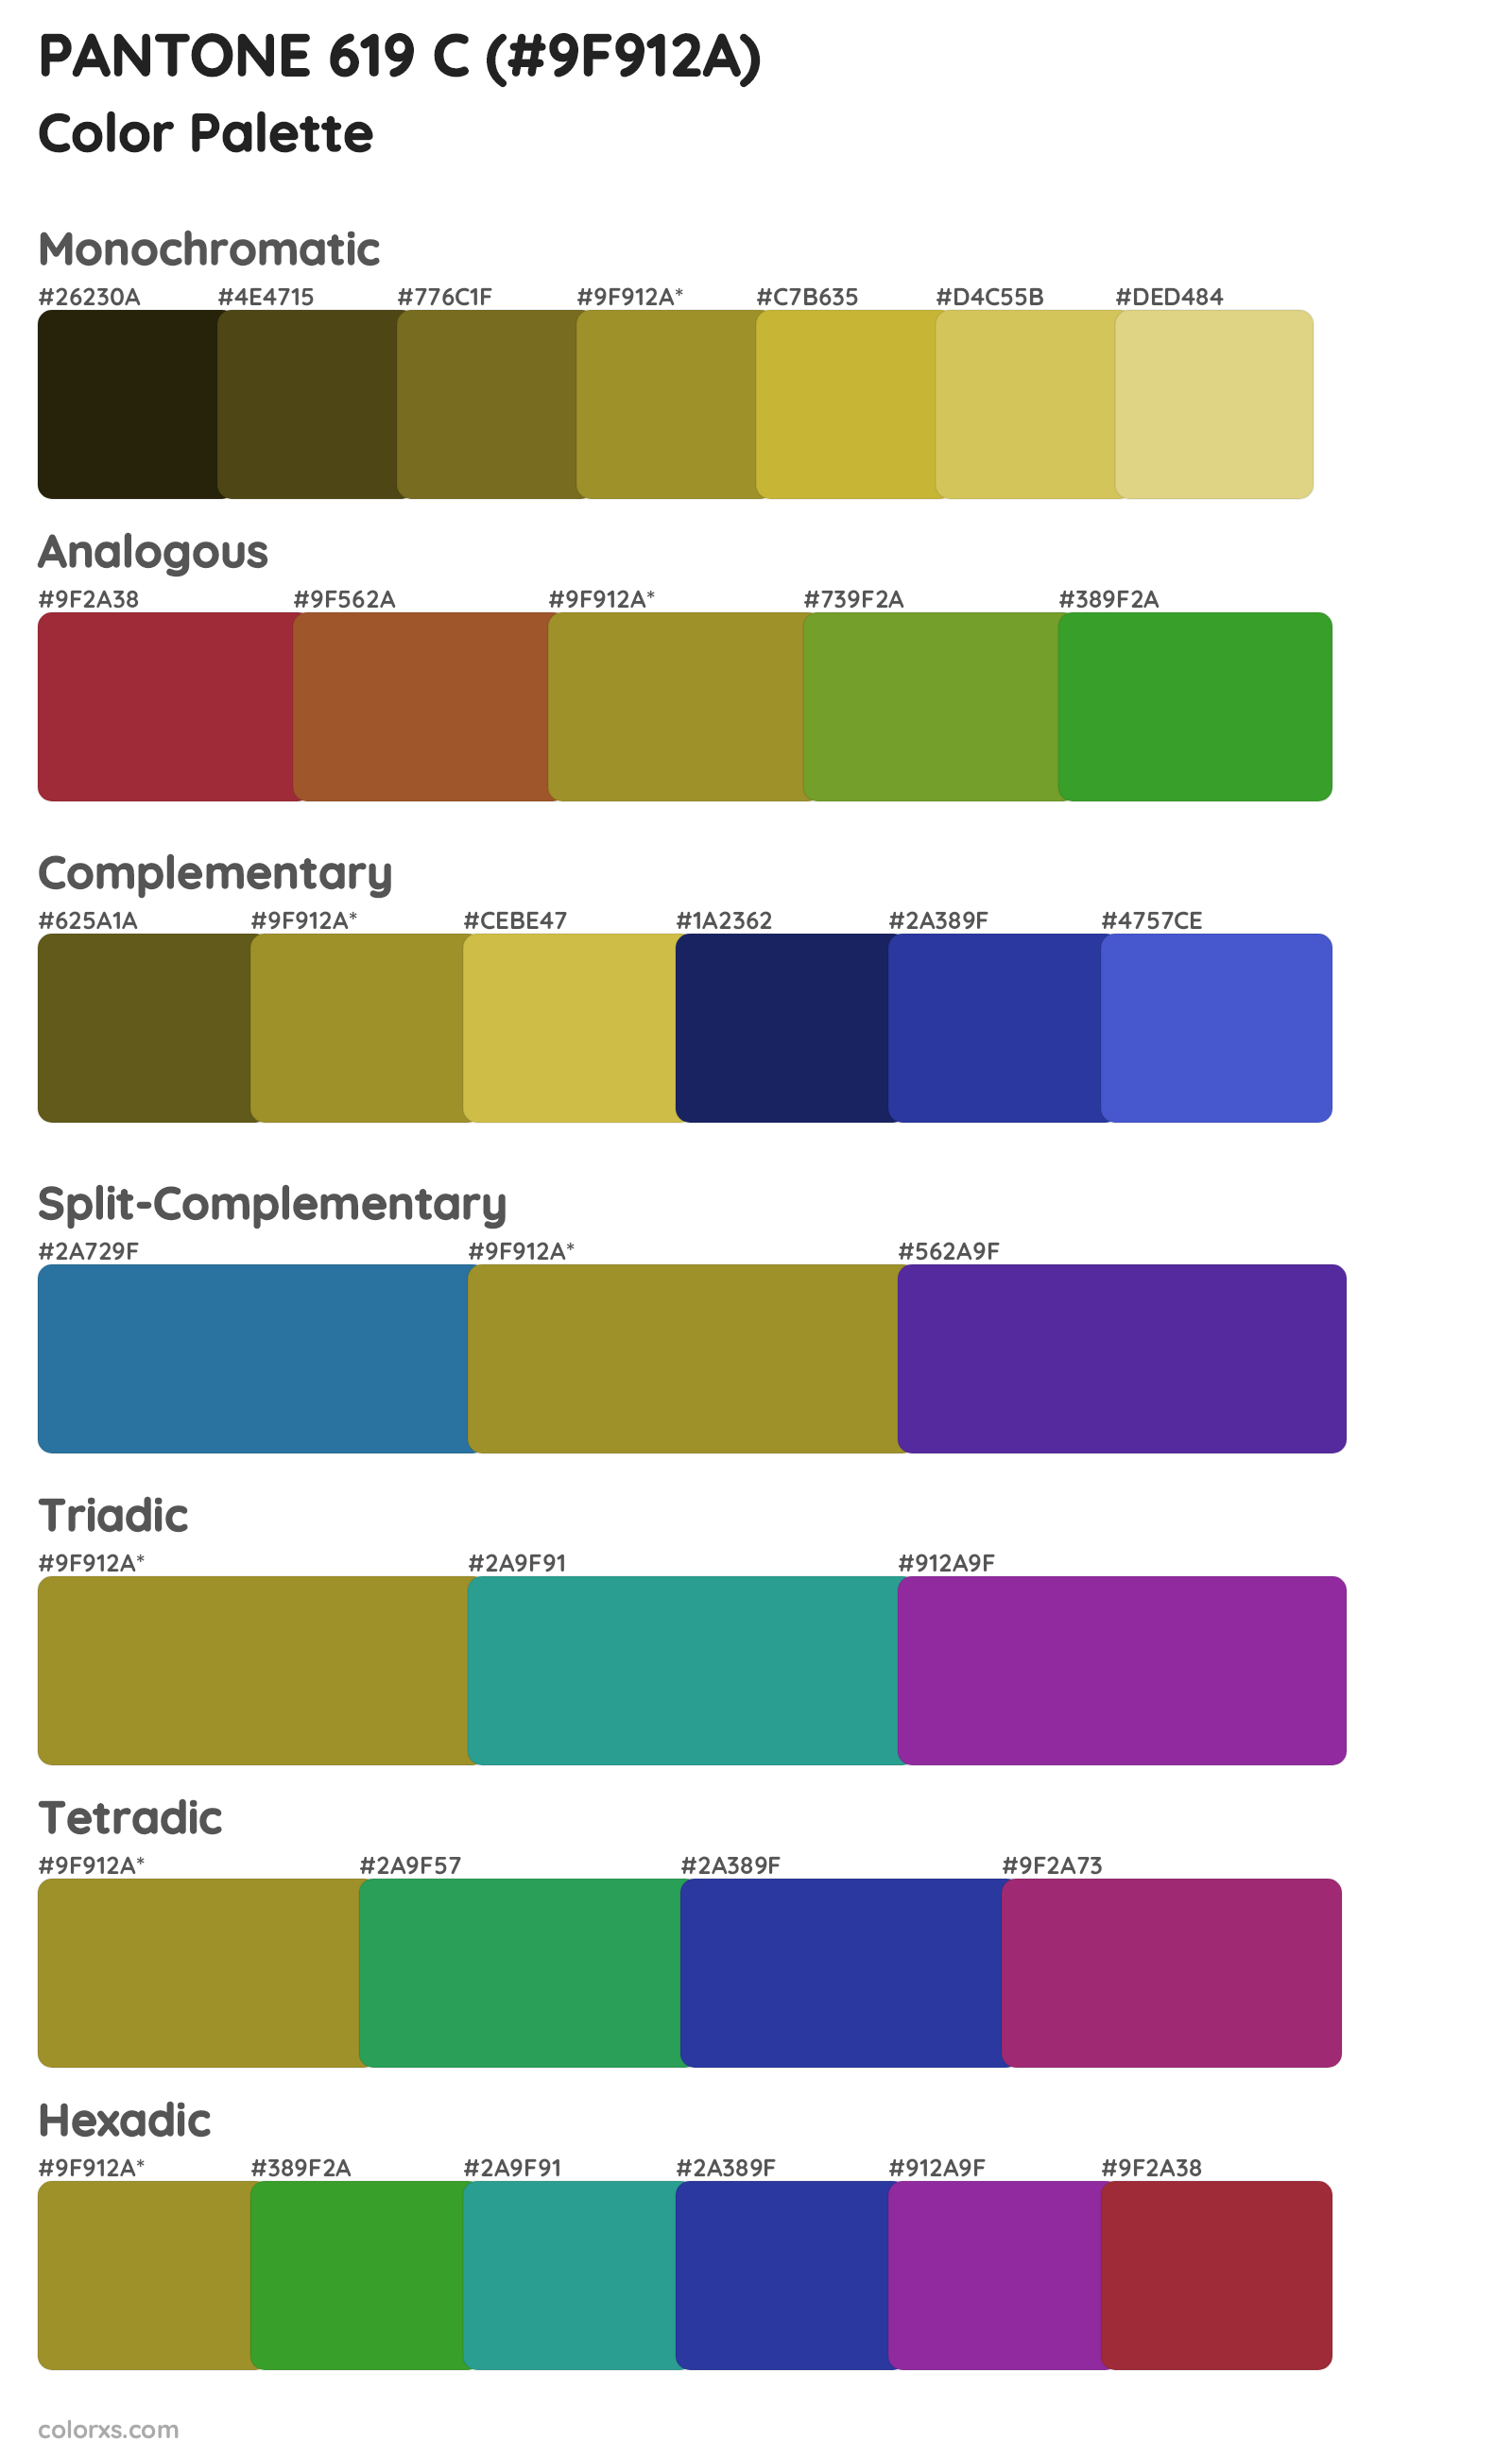 PANTONE 619 C Color Scheme Palettes